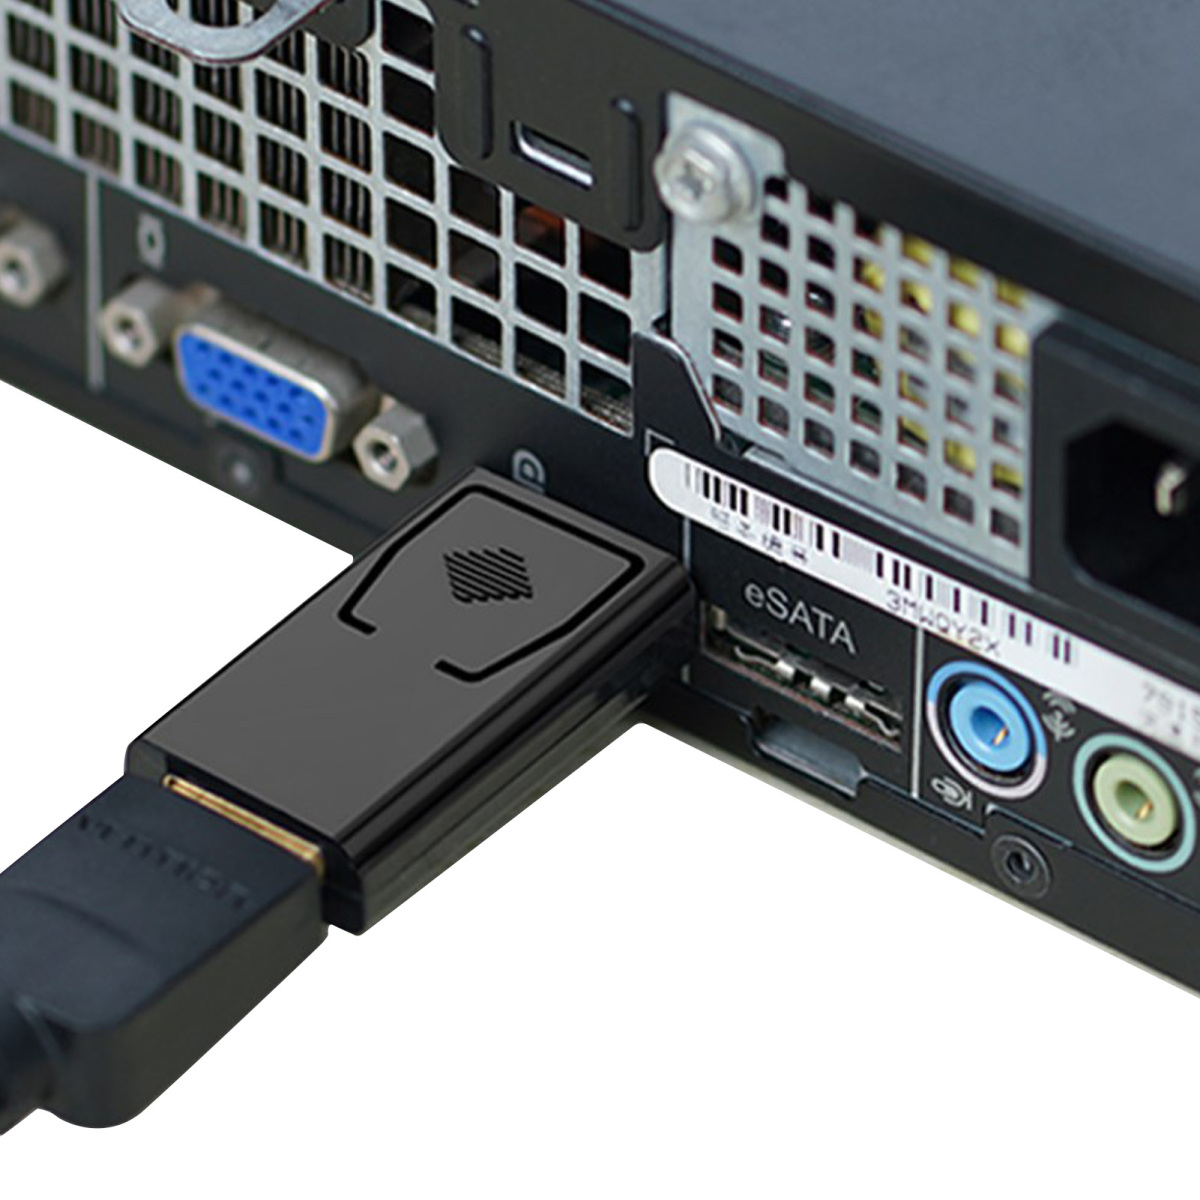 DisplayPort-HDMI переходник dp-hdmi DisplayPort мужской HDMI женский конверсионный адаптор 